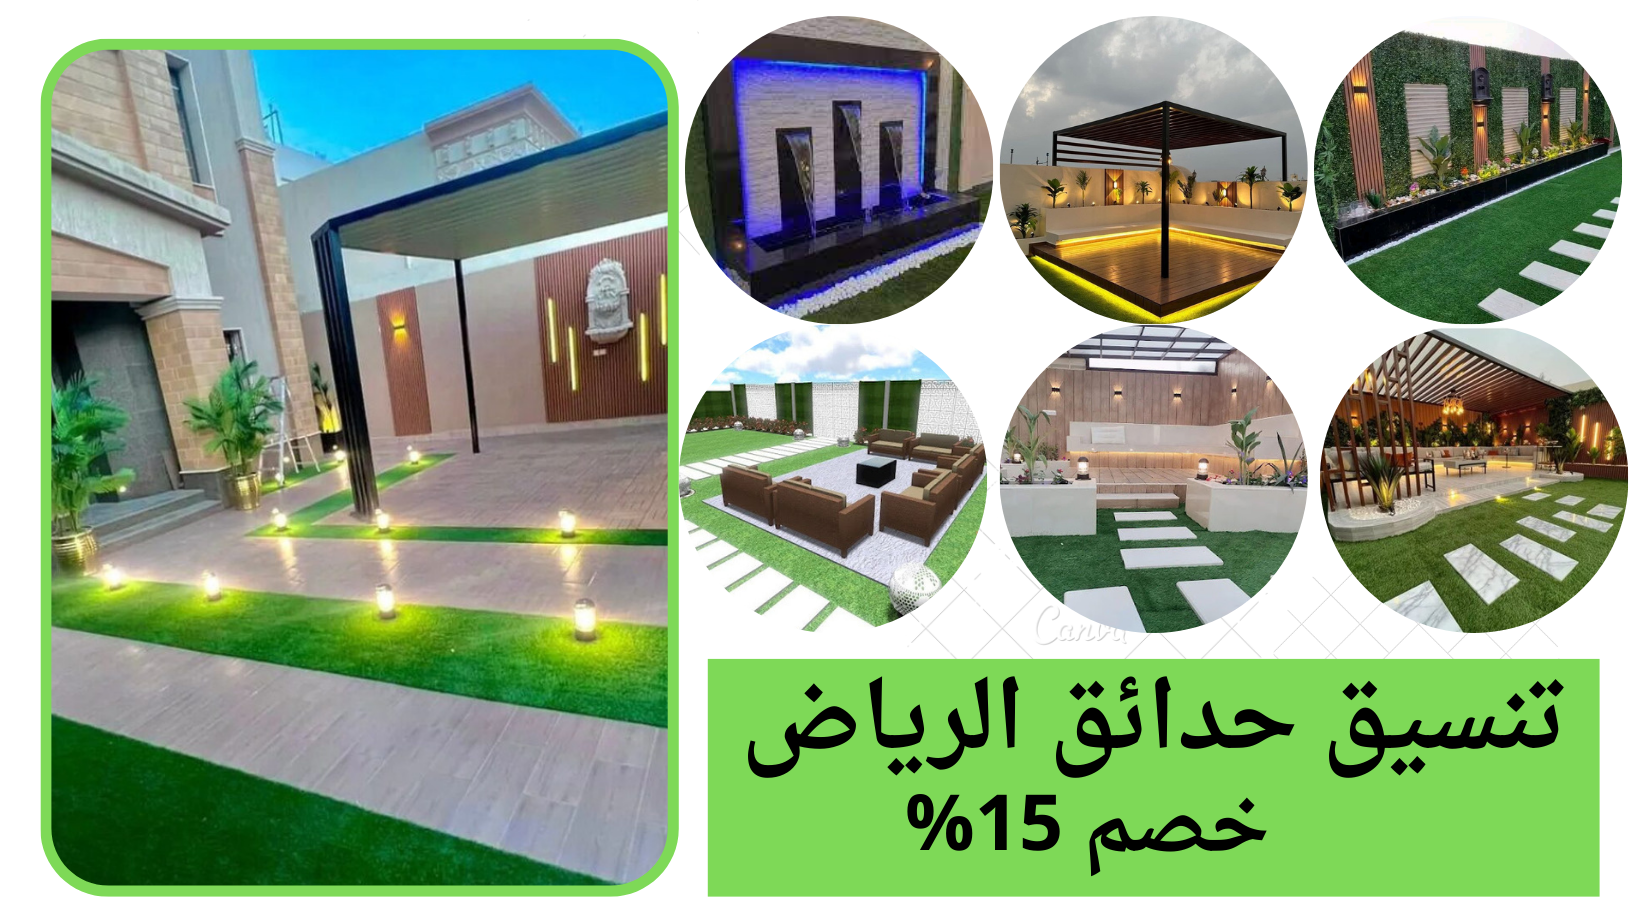 تصاميم حدائق مميزة في الرياض لتجعل منزلك أكثر جمالا وأناقة